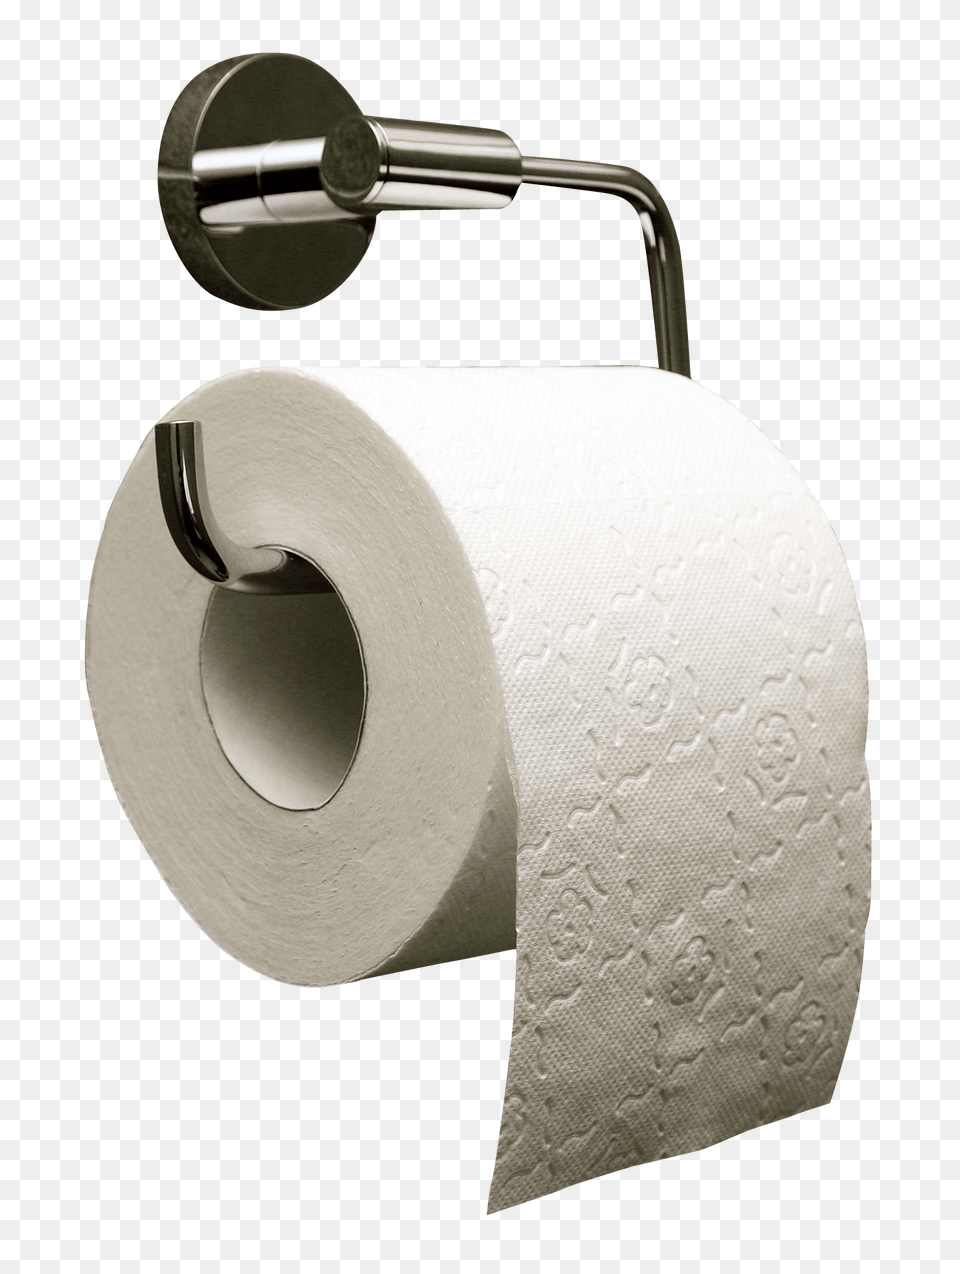 Pngpix Com Toilet Paper Roll Transparent, Bathroom, Toilet Paper, Tissue, Shower Faucet Png Image